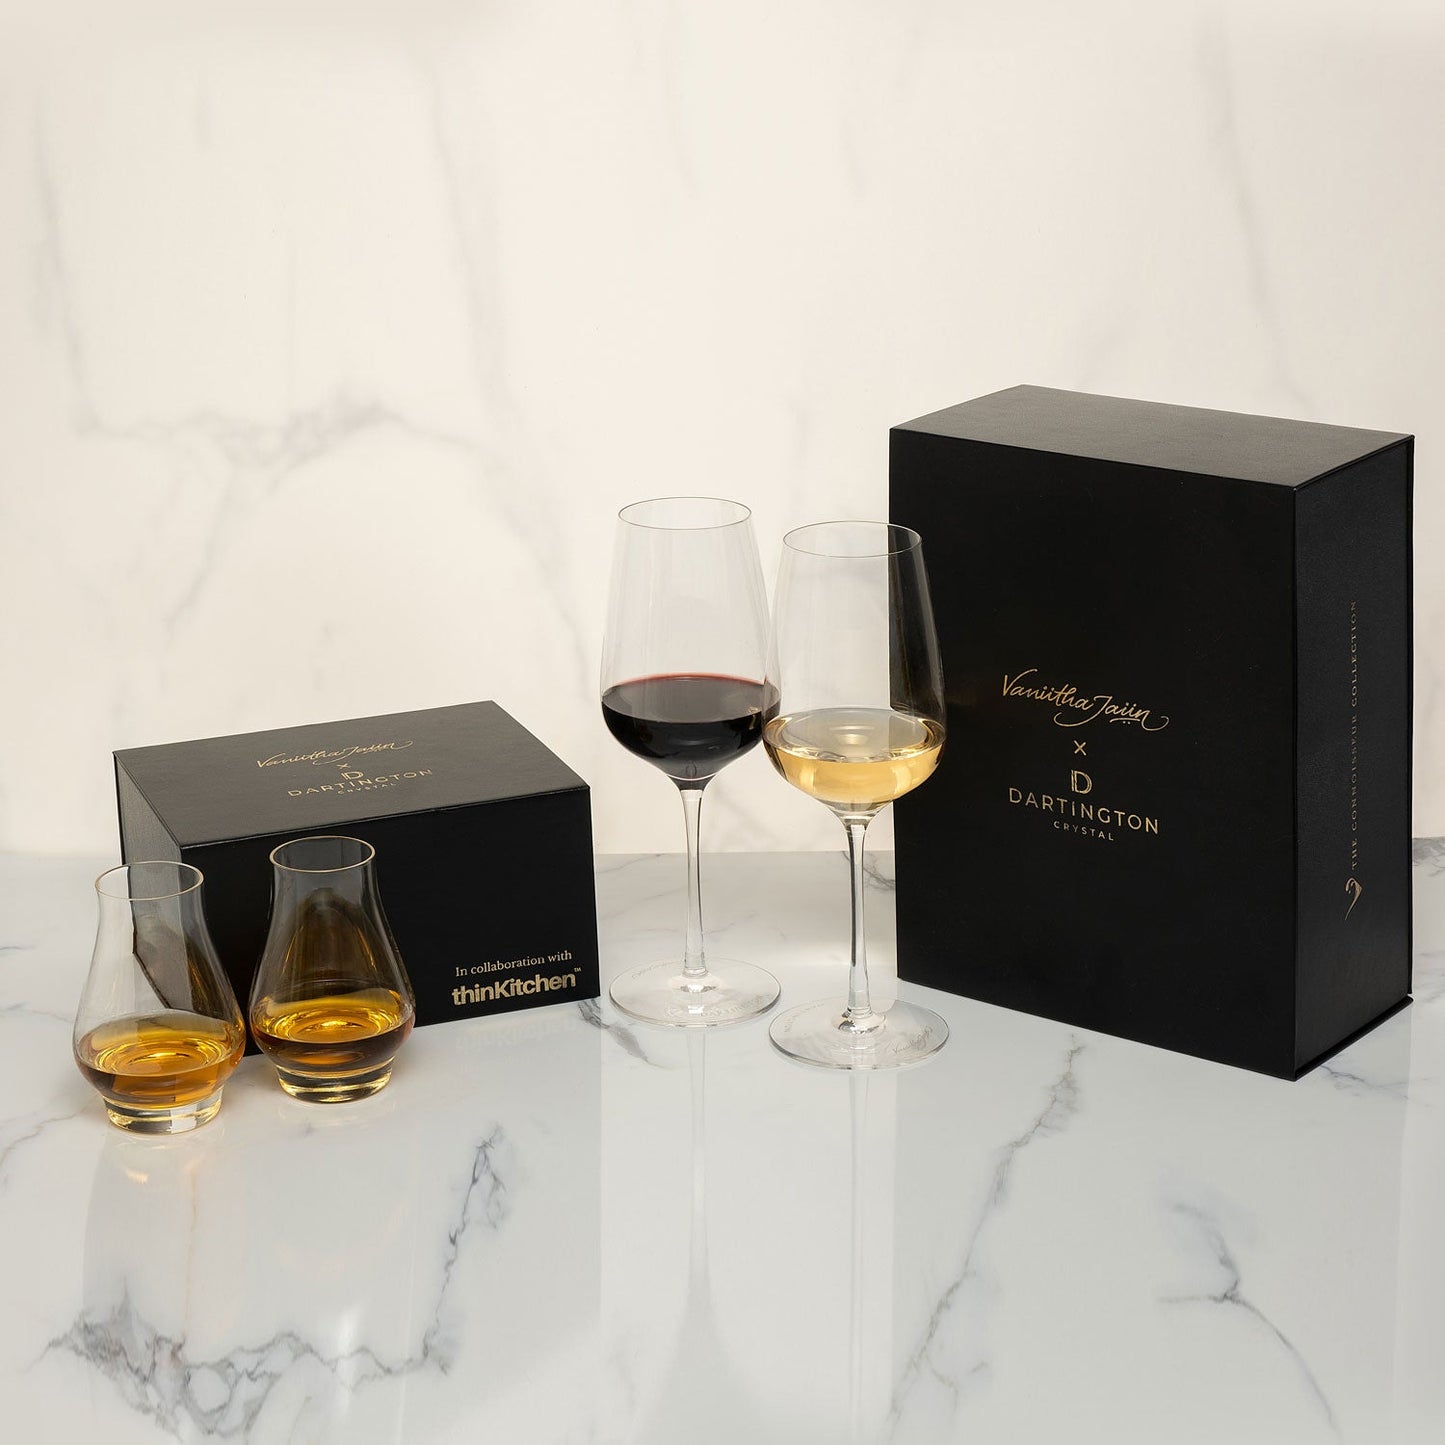 Dartington x Vaniitha Jaiin : The Connoisseur Collection - Universal Wine Glass Set of 2